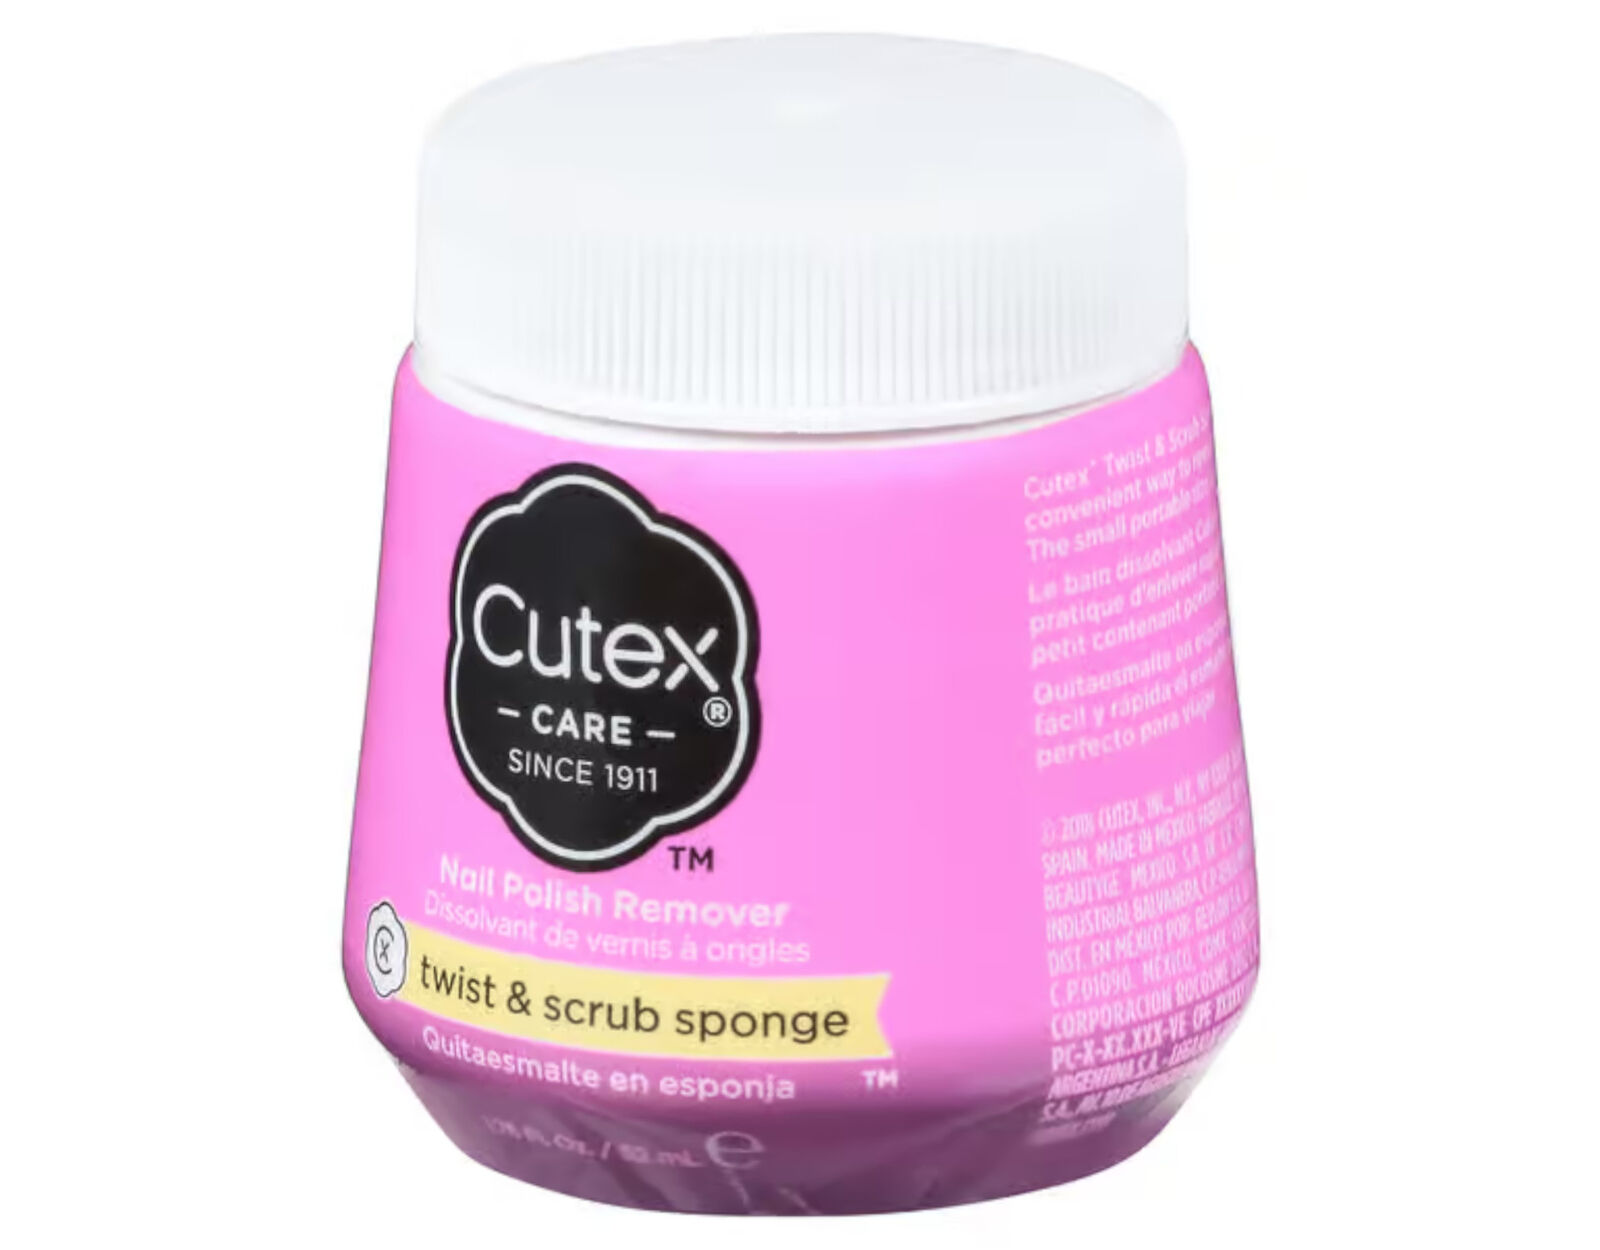 Cutex Nail Polish Remover Twist & Scrub Sponge, 1.75 Oz. - Pack of 6